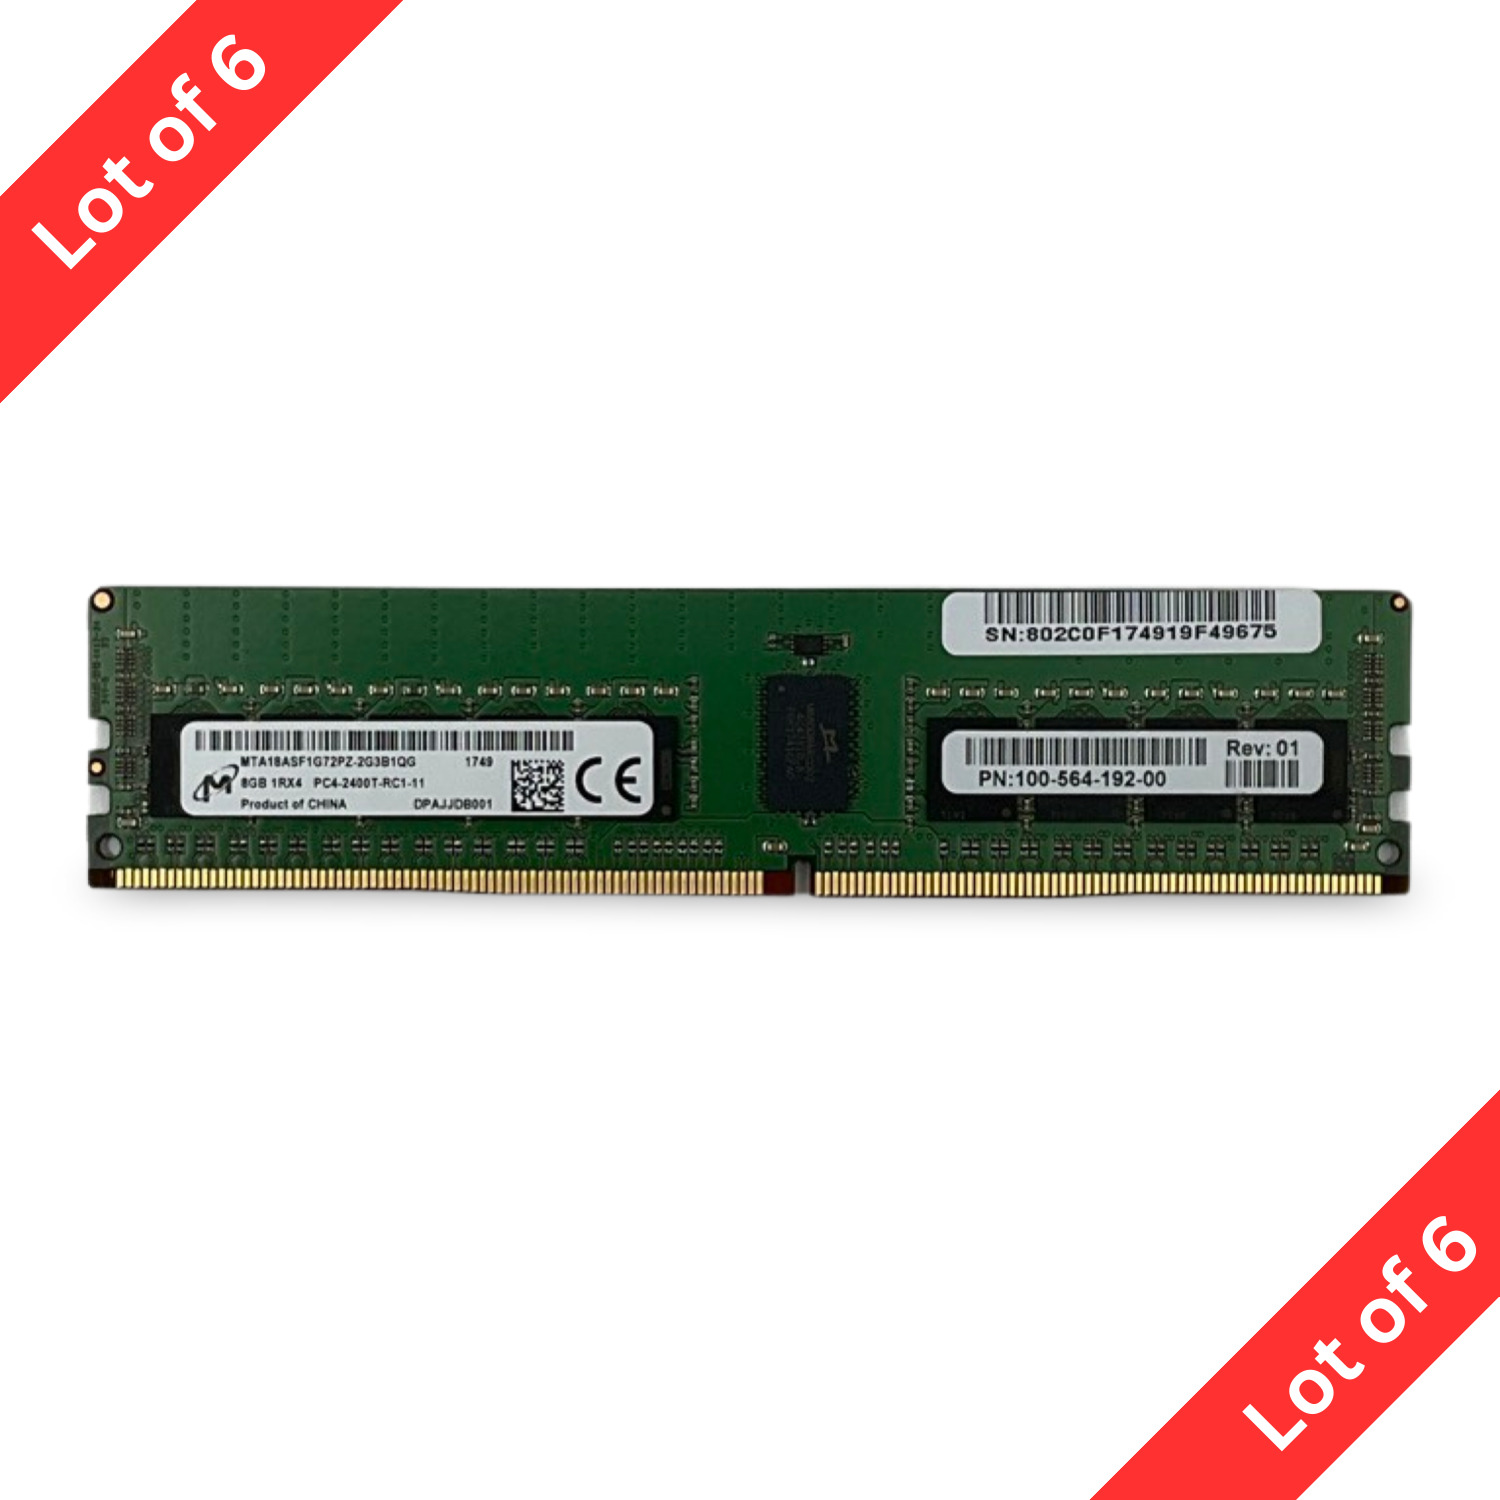 Lot | 48GB Micron (6 X 8GB) PC4-2400T-RC1-11 PC4-2400T DDR4 SERVER RAM MEMORY